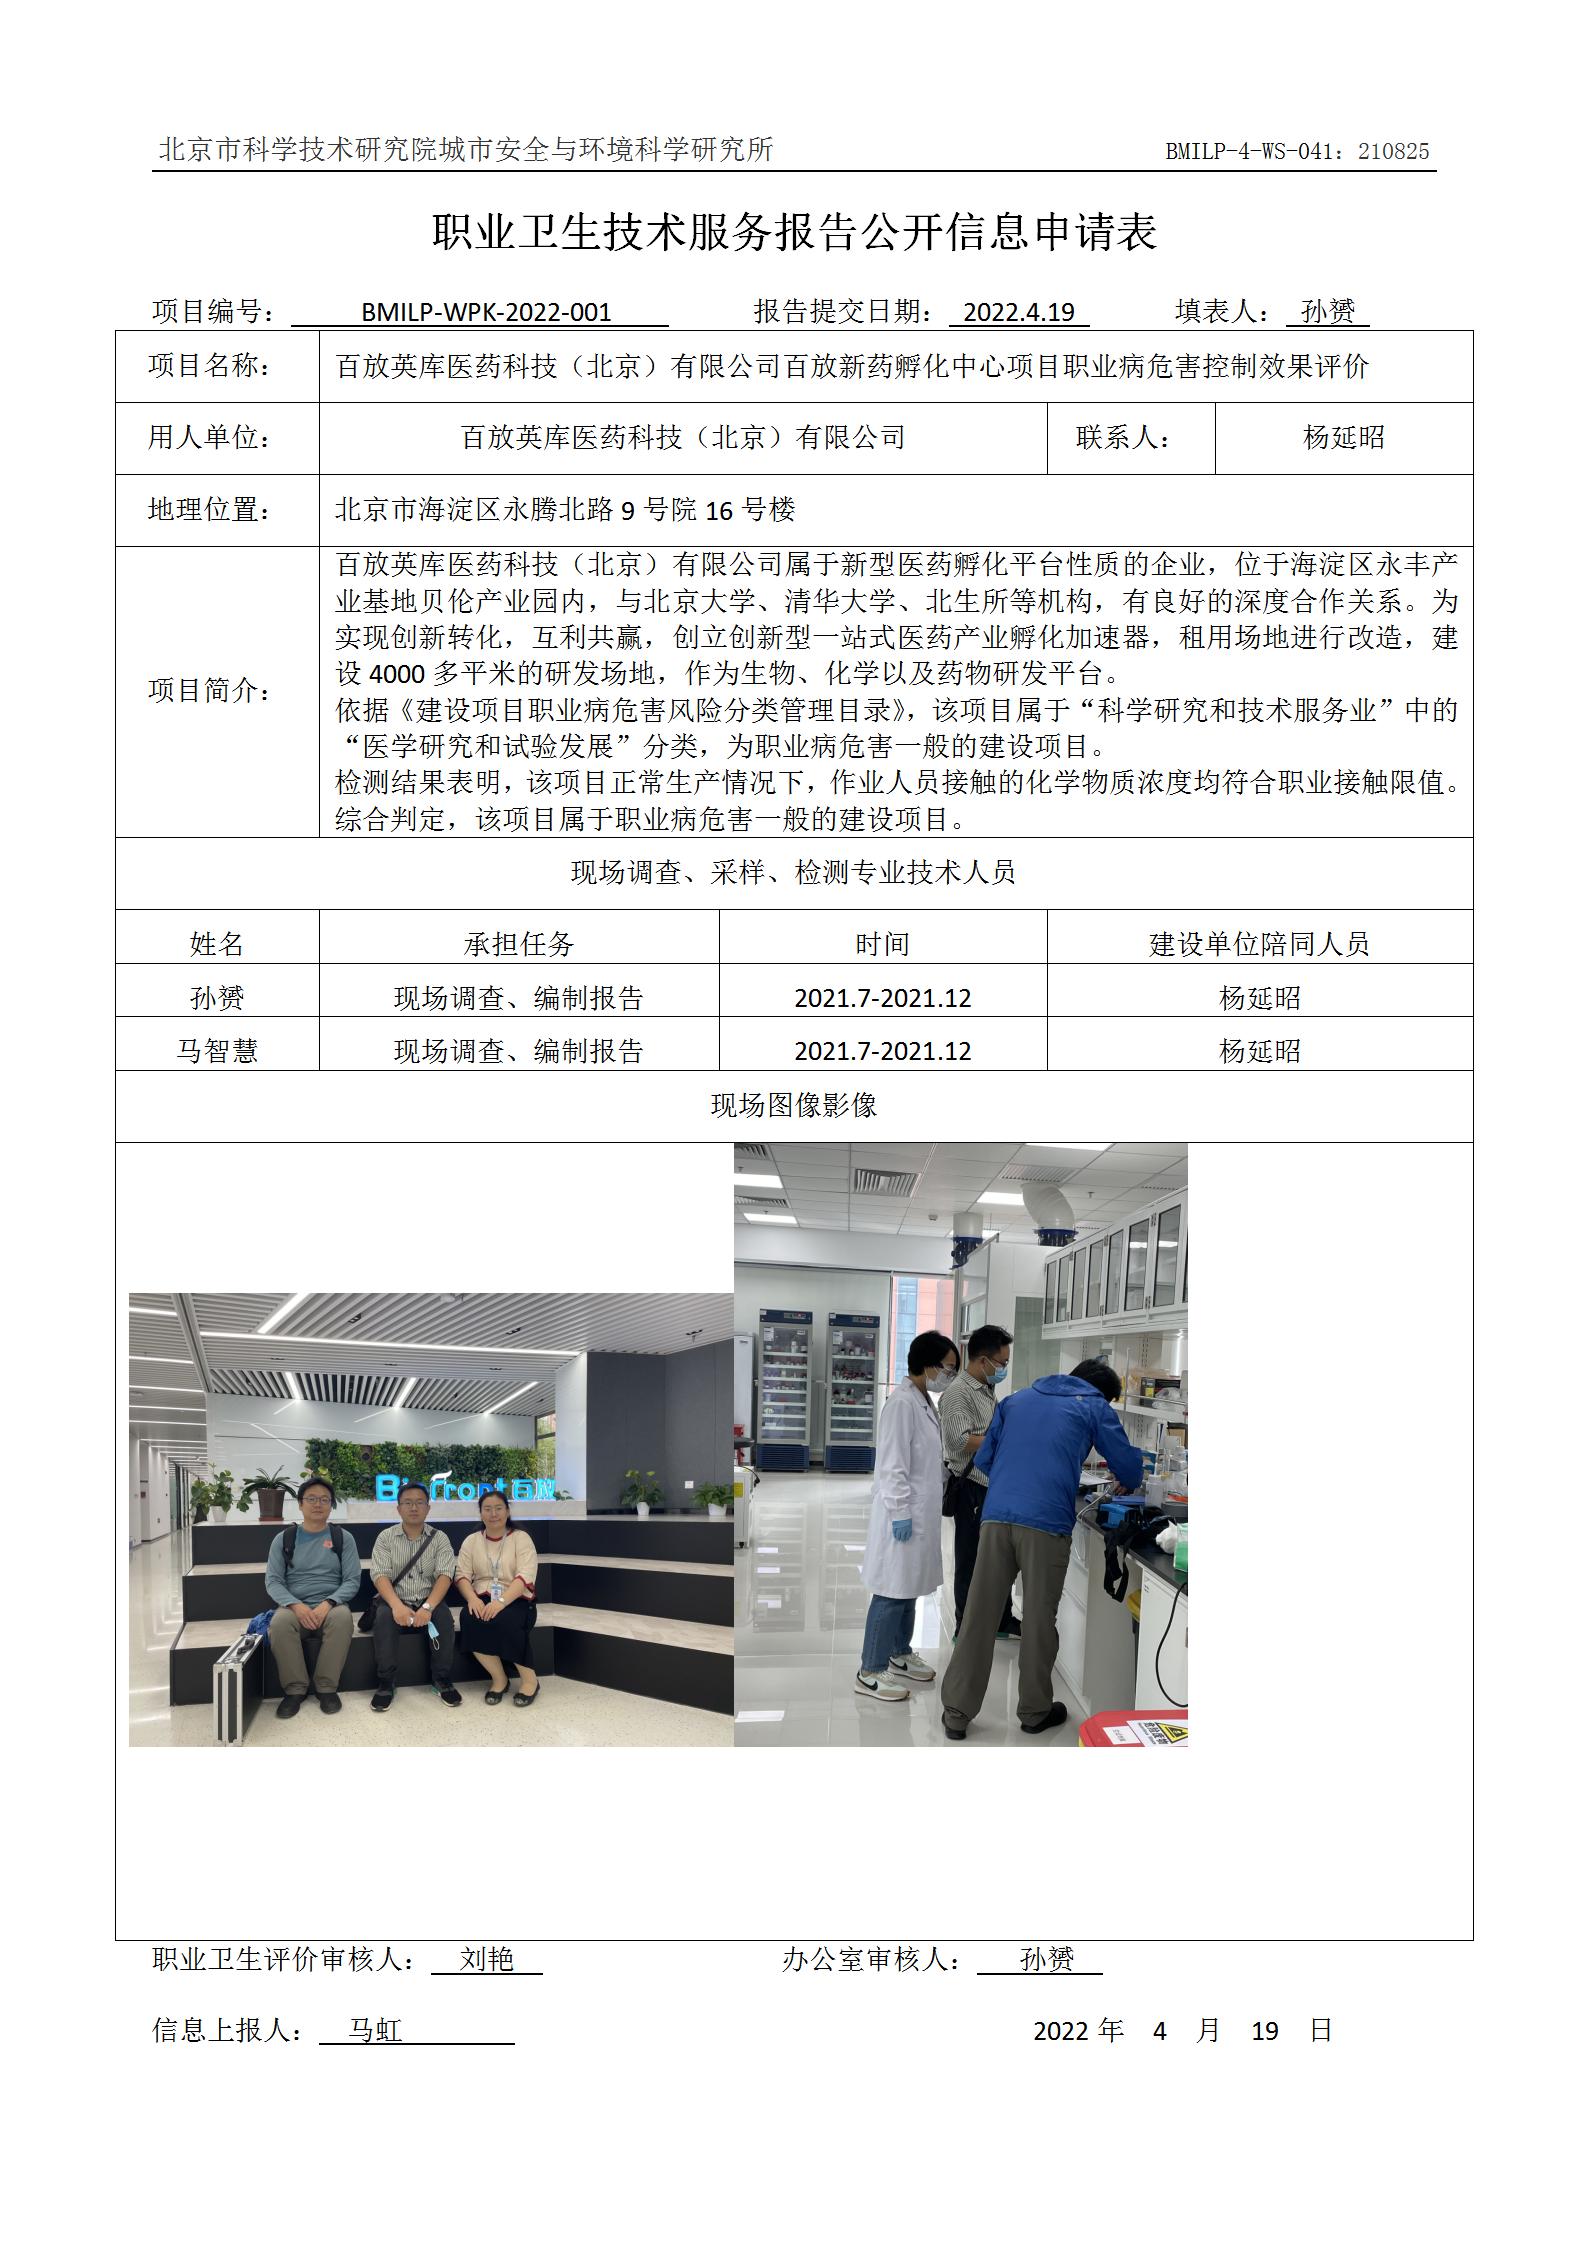 百放英库医药科技（北京）有限公司百放新药孵化中心项目职业病危害控制效果评价